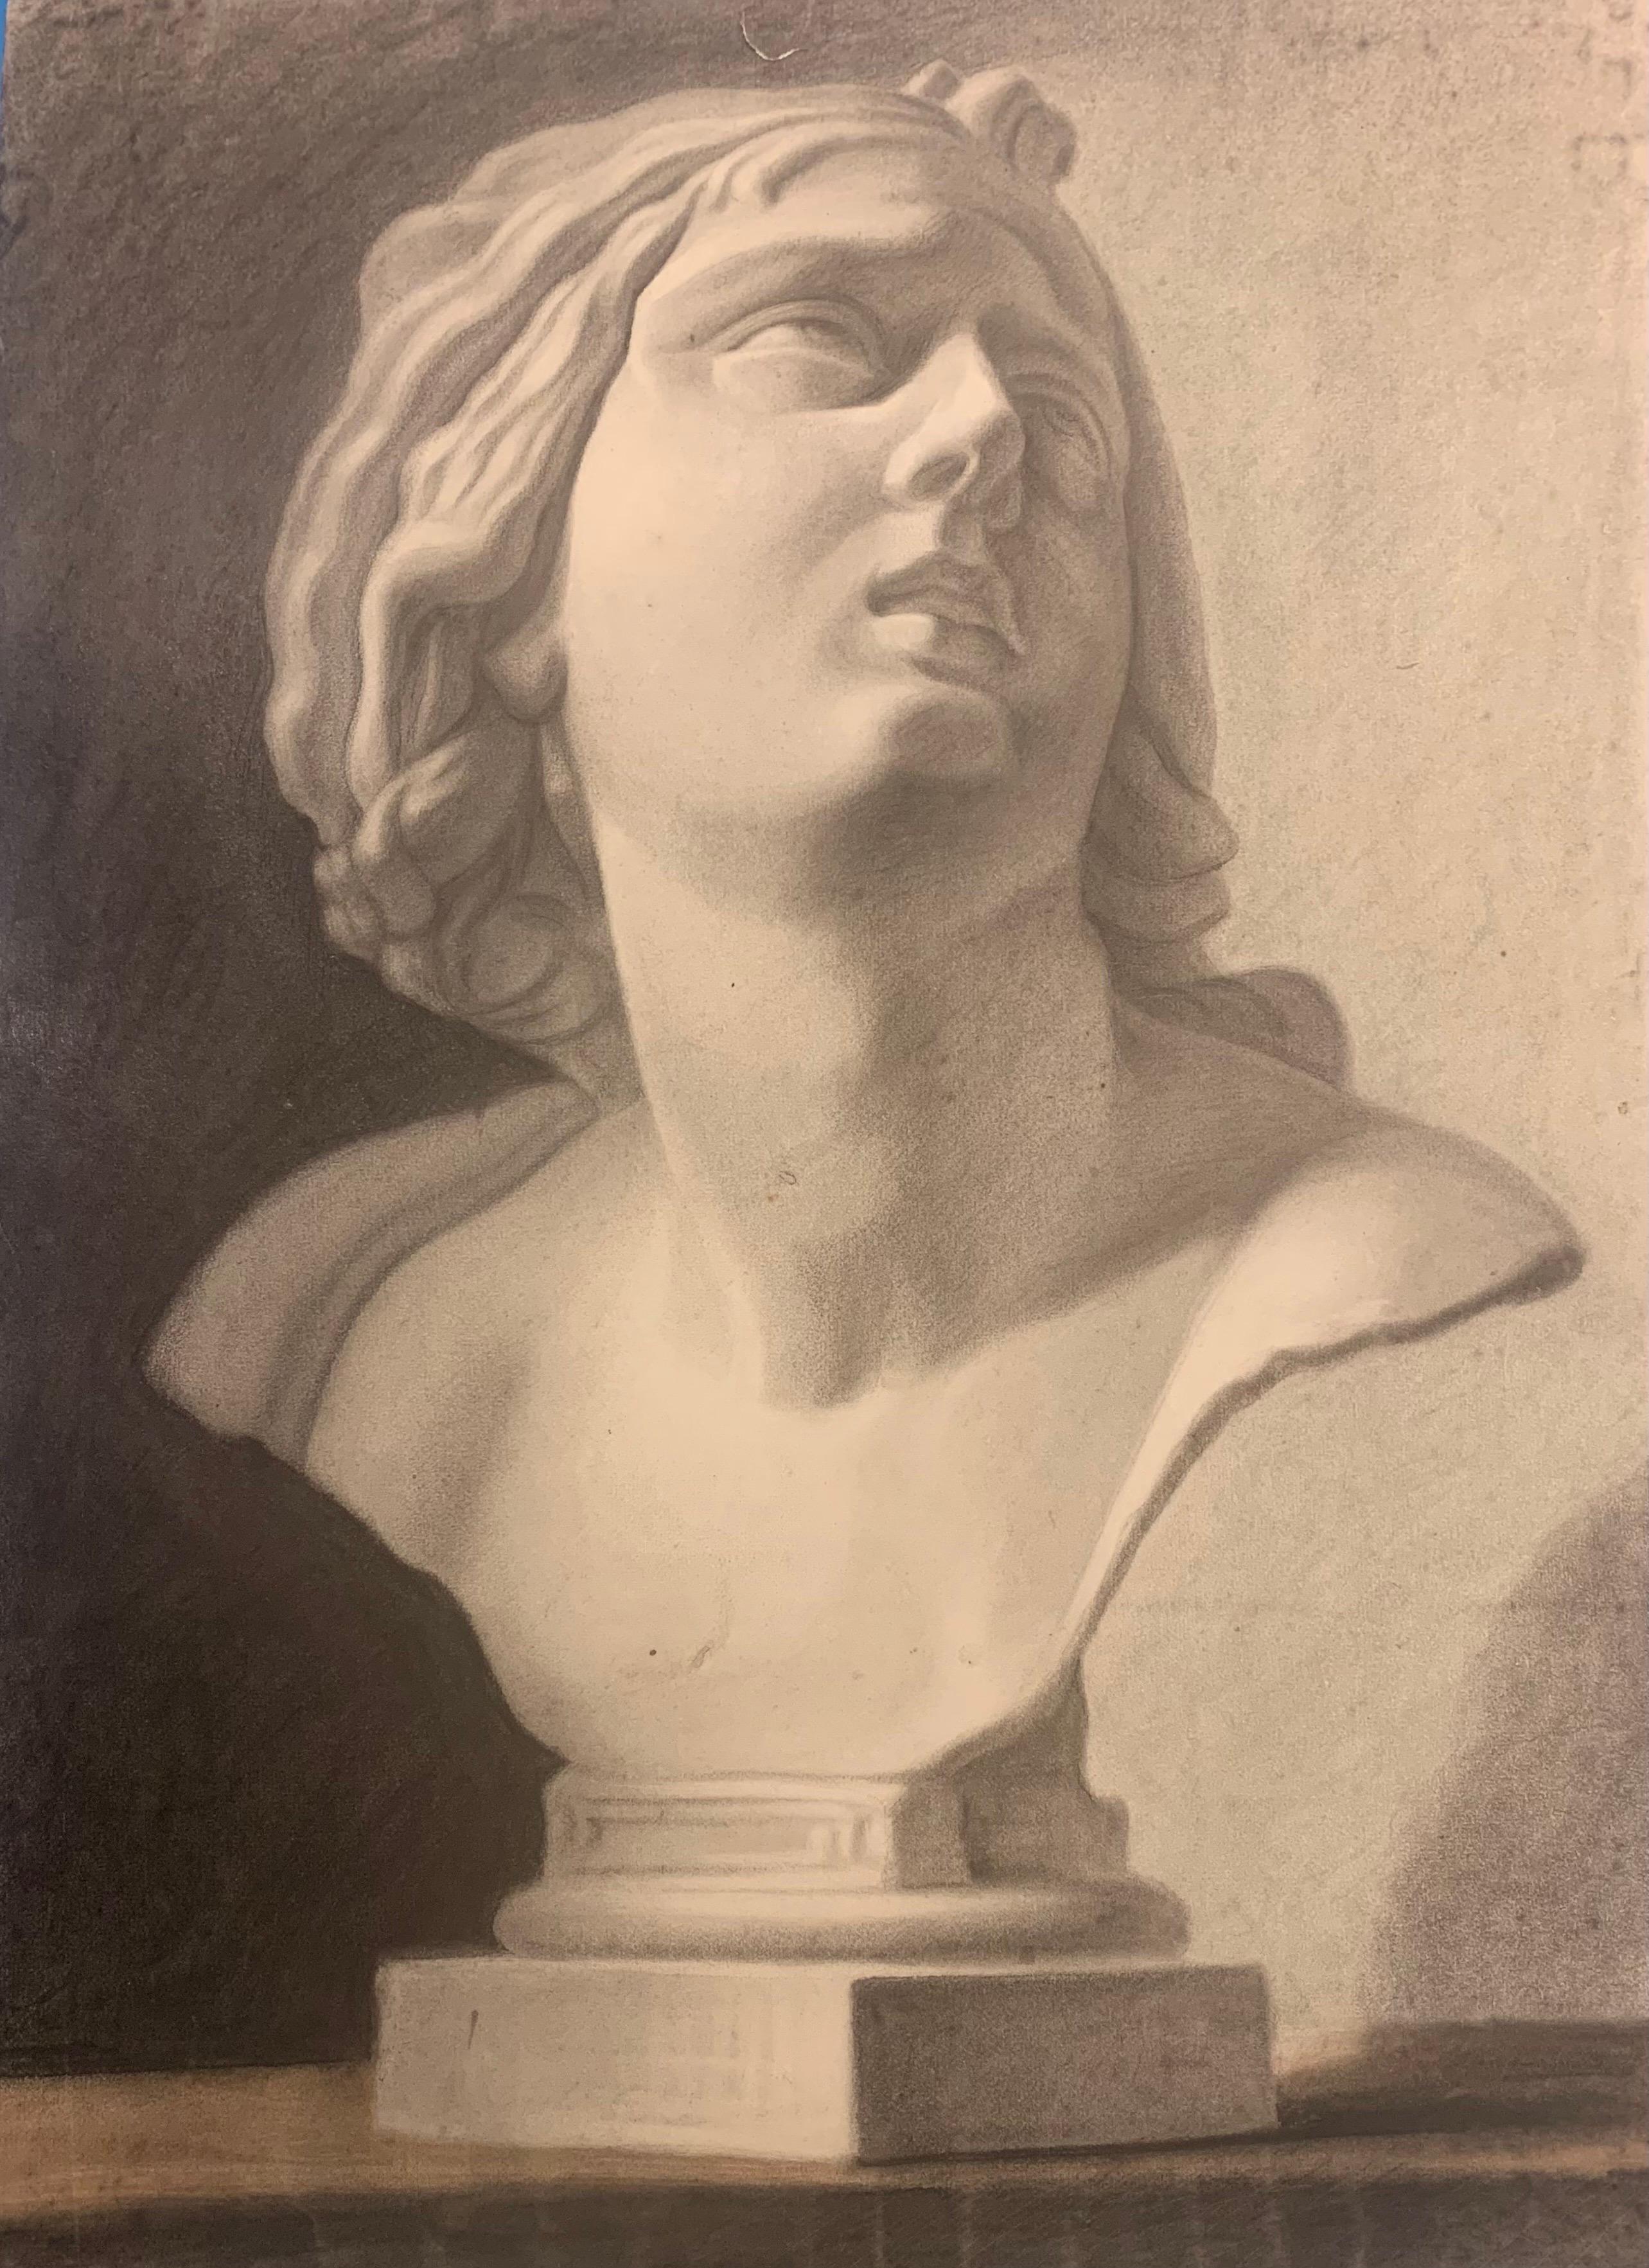 Dessin académique d'une sculpture de buste classique. 19e siècle